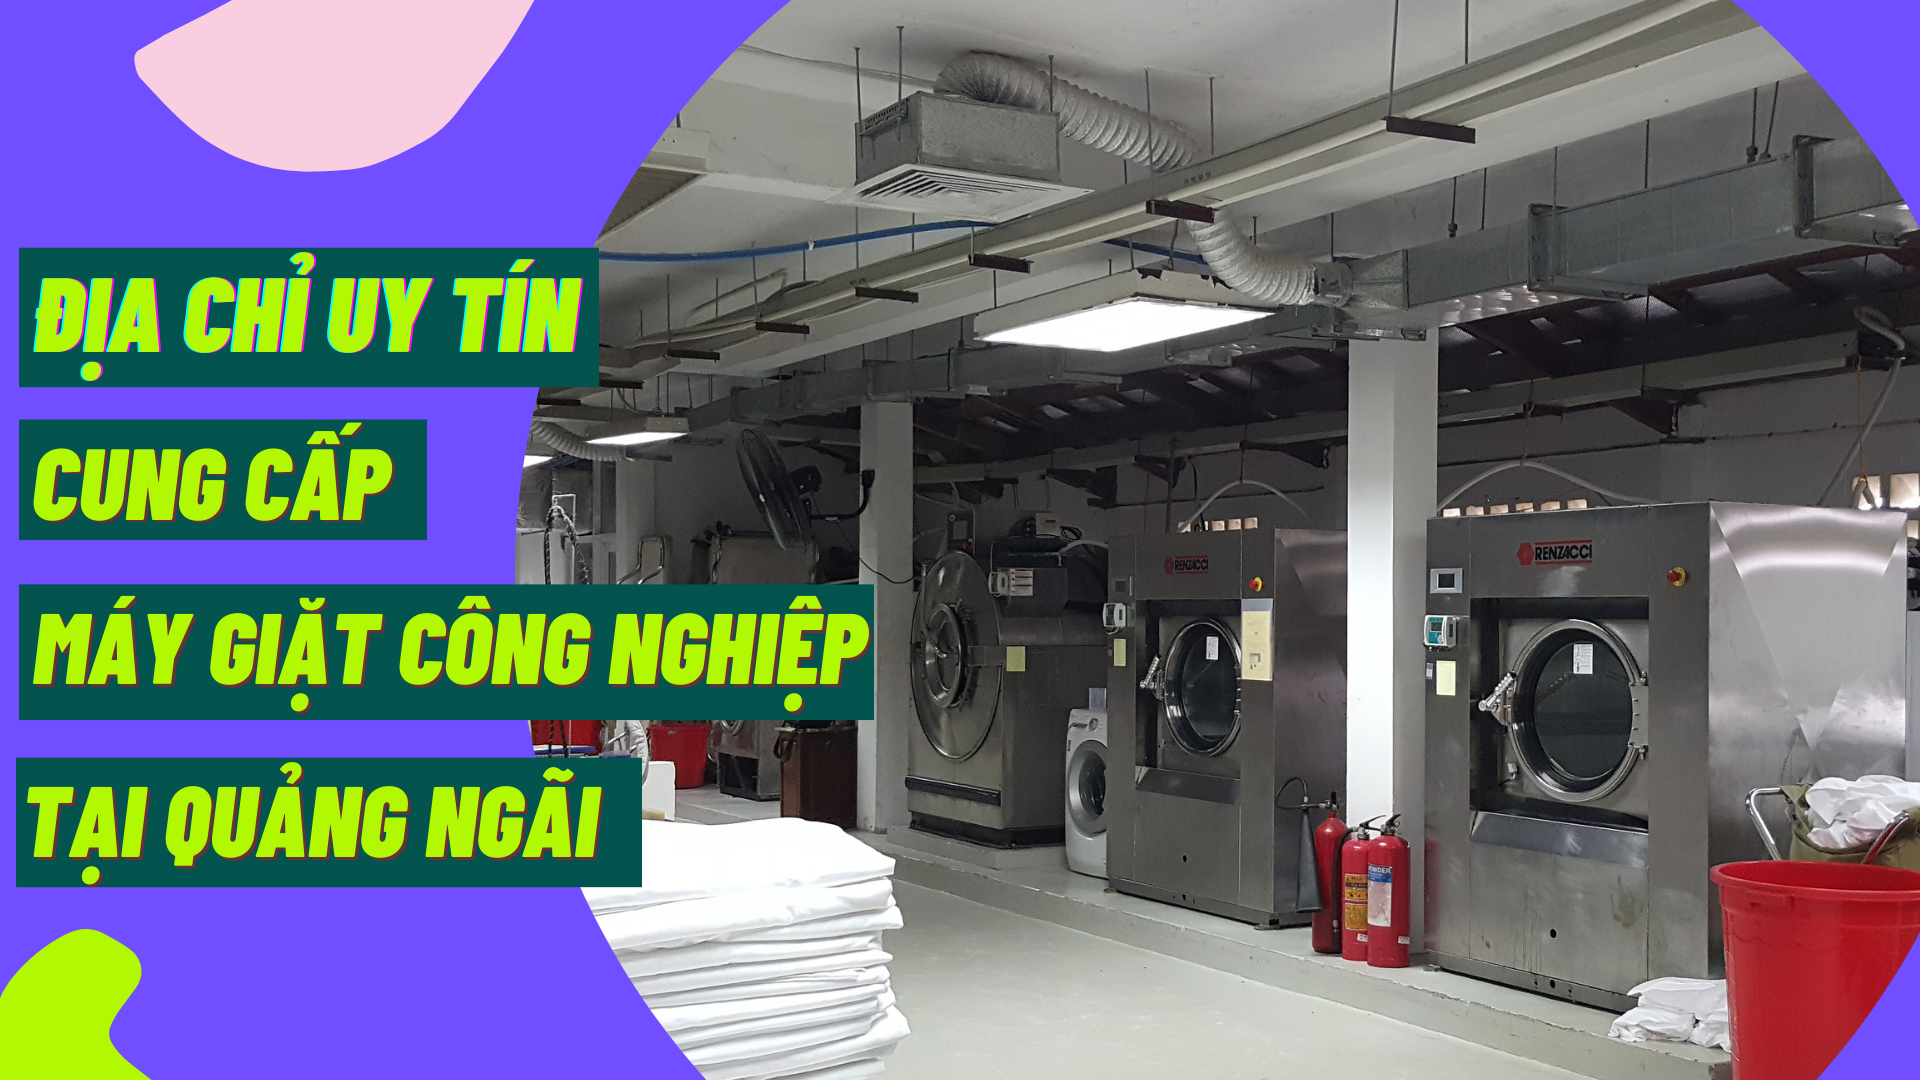 Địa chỉ uy tín cung cấp máy giặt công nghiệp tại Quảng Ngãi